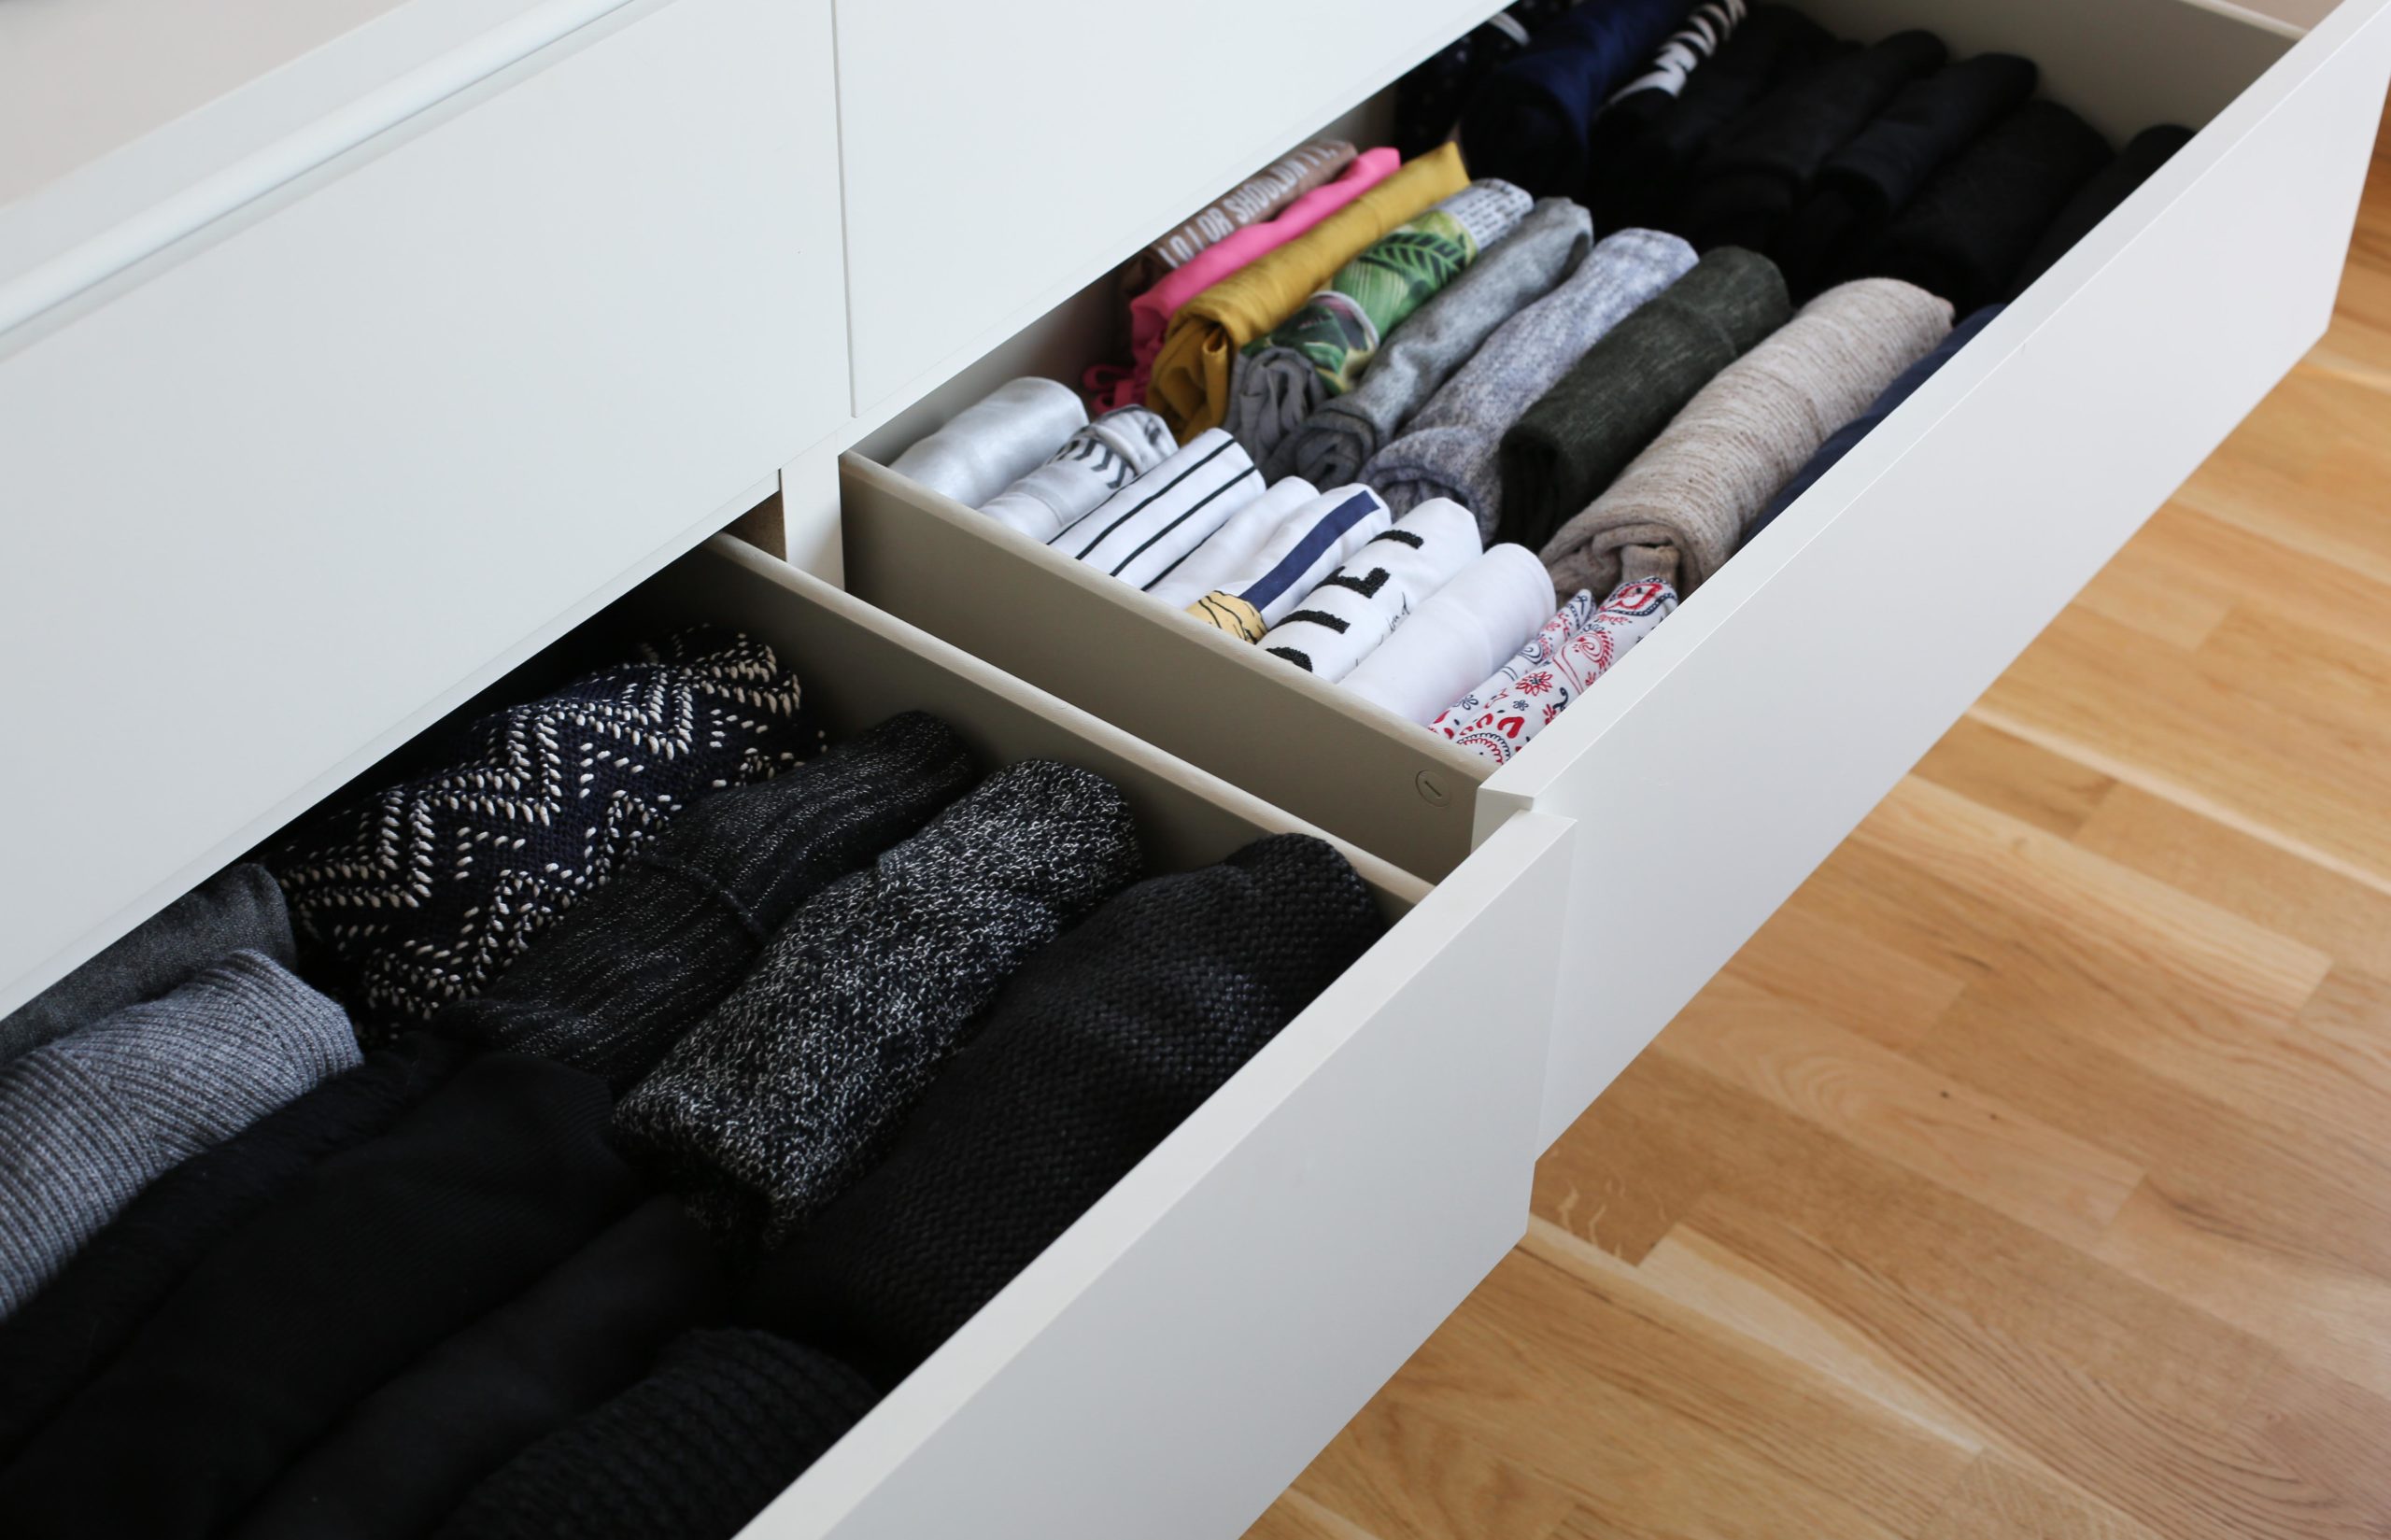 Comment ranger vos vêtements dans un petit espace ?